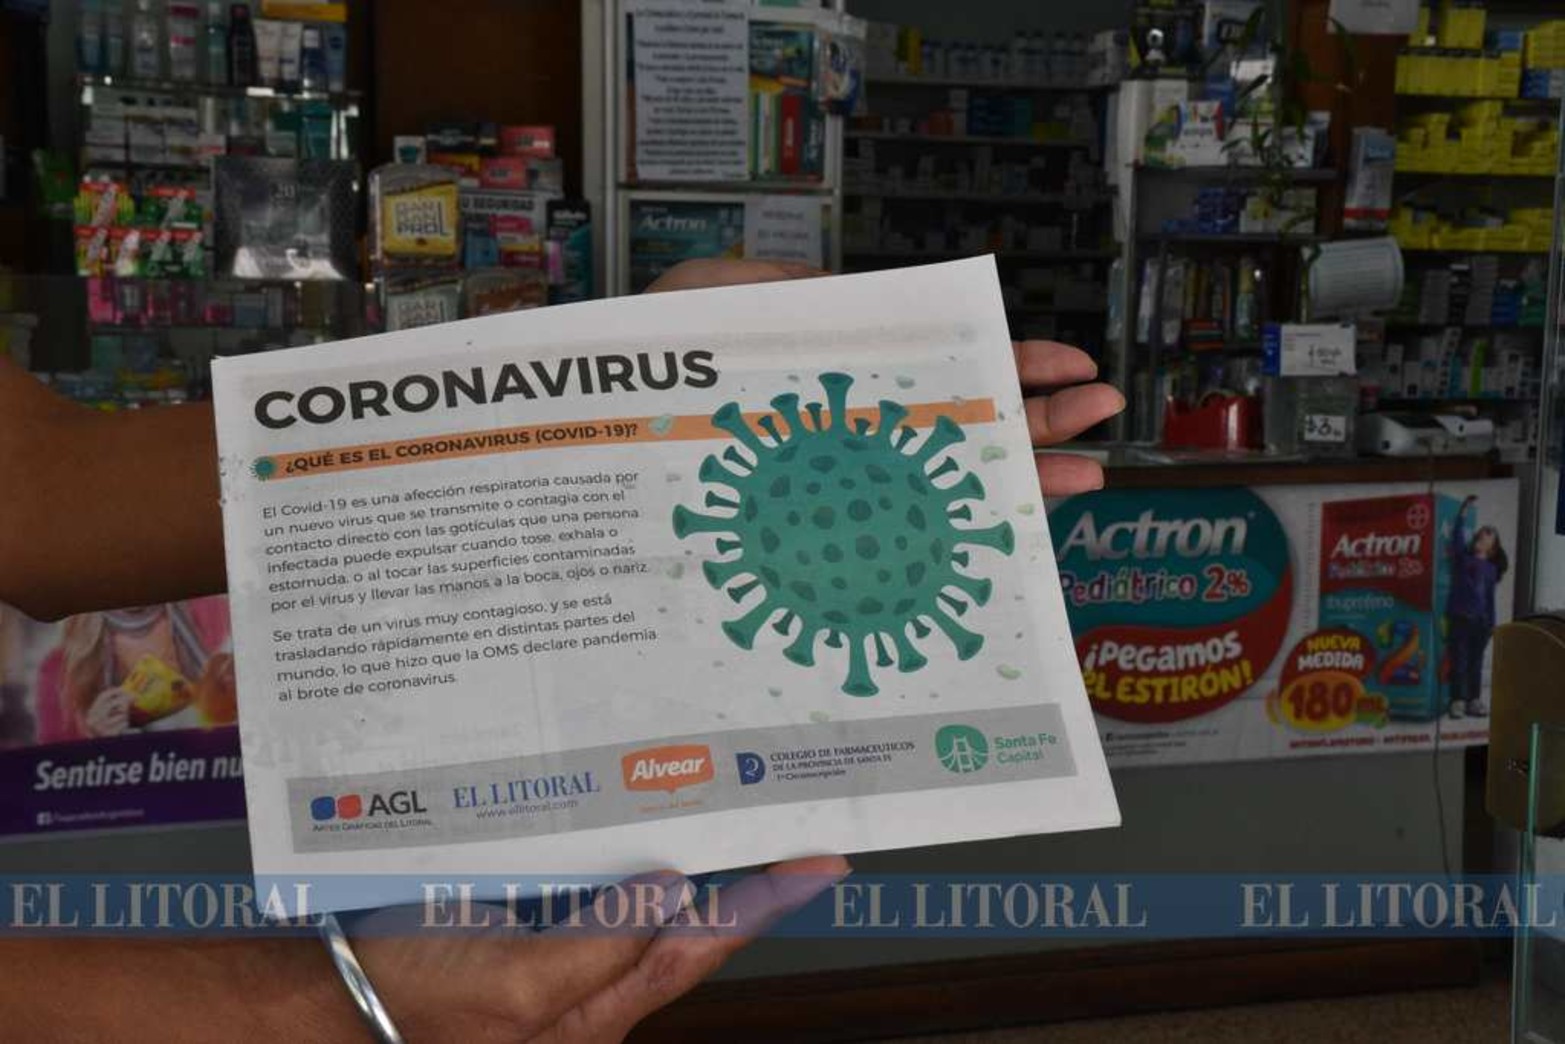 En farmacias está disponible este ejemplar impreso donde se brinda información sobre el Coronavirus